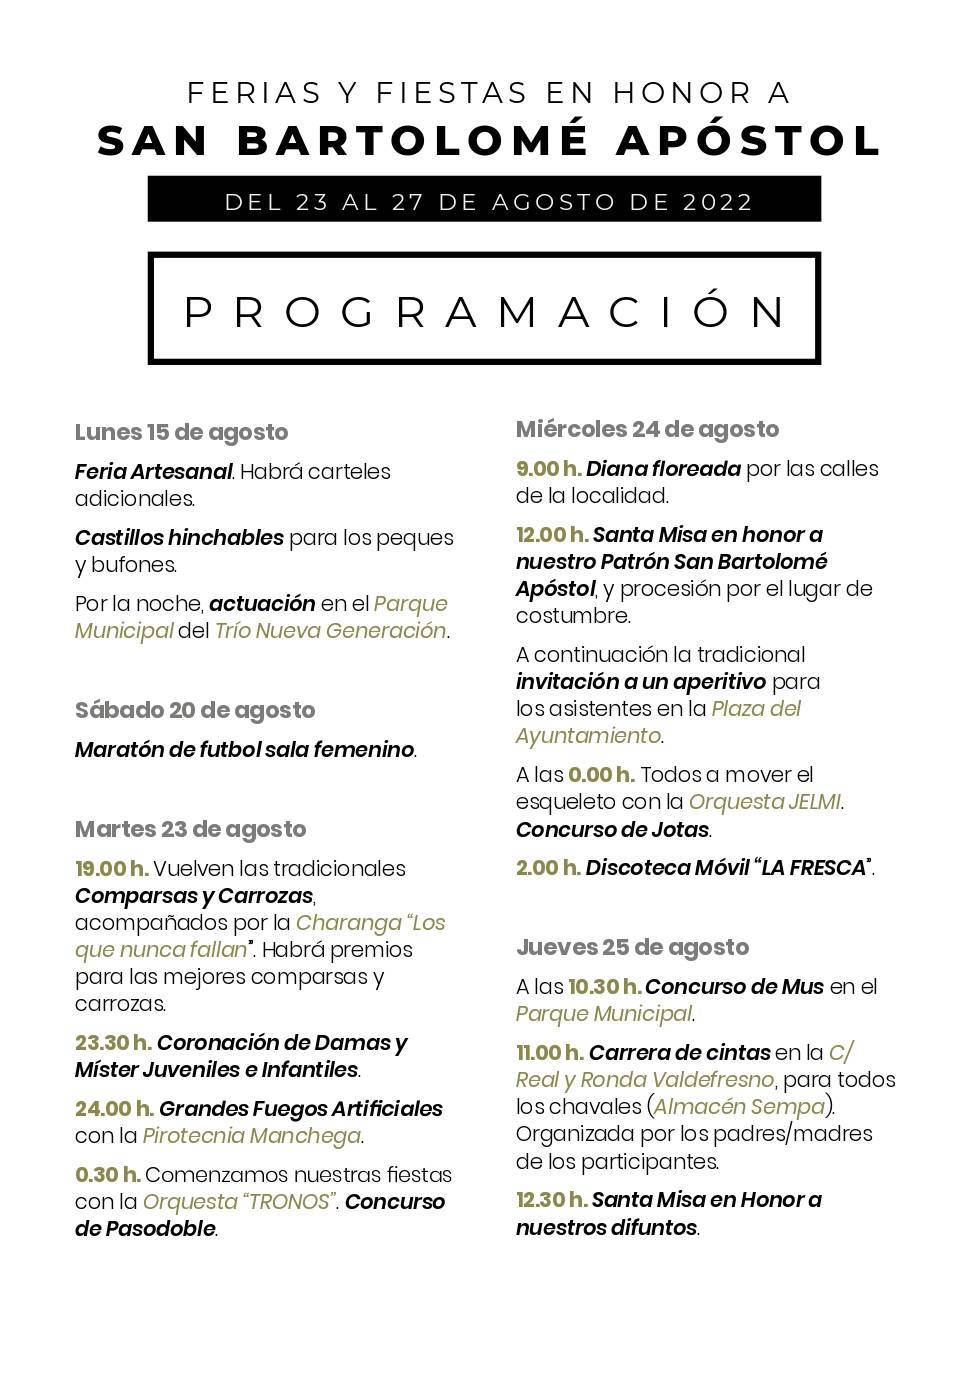 Programa de fiestas de San Bartolomé Apóstol (2022) - Retuerta del Bullaque (Ciudad Real) 2